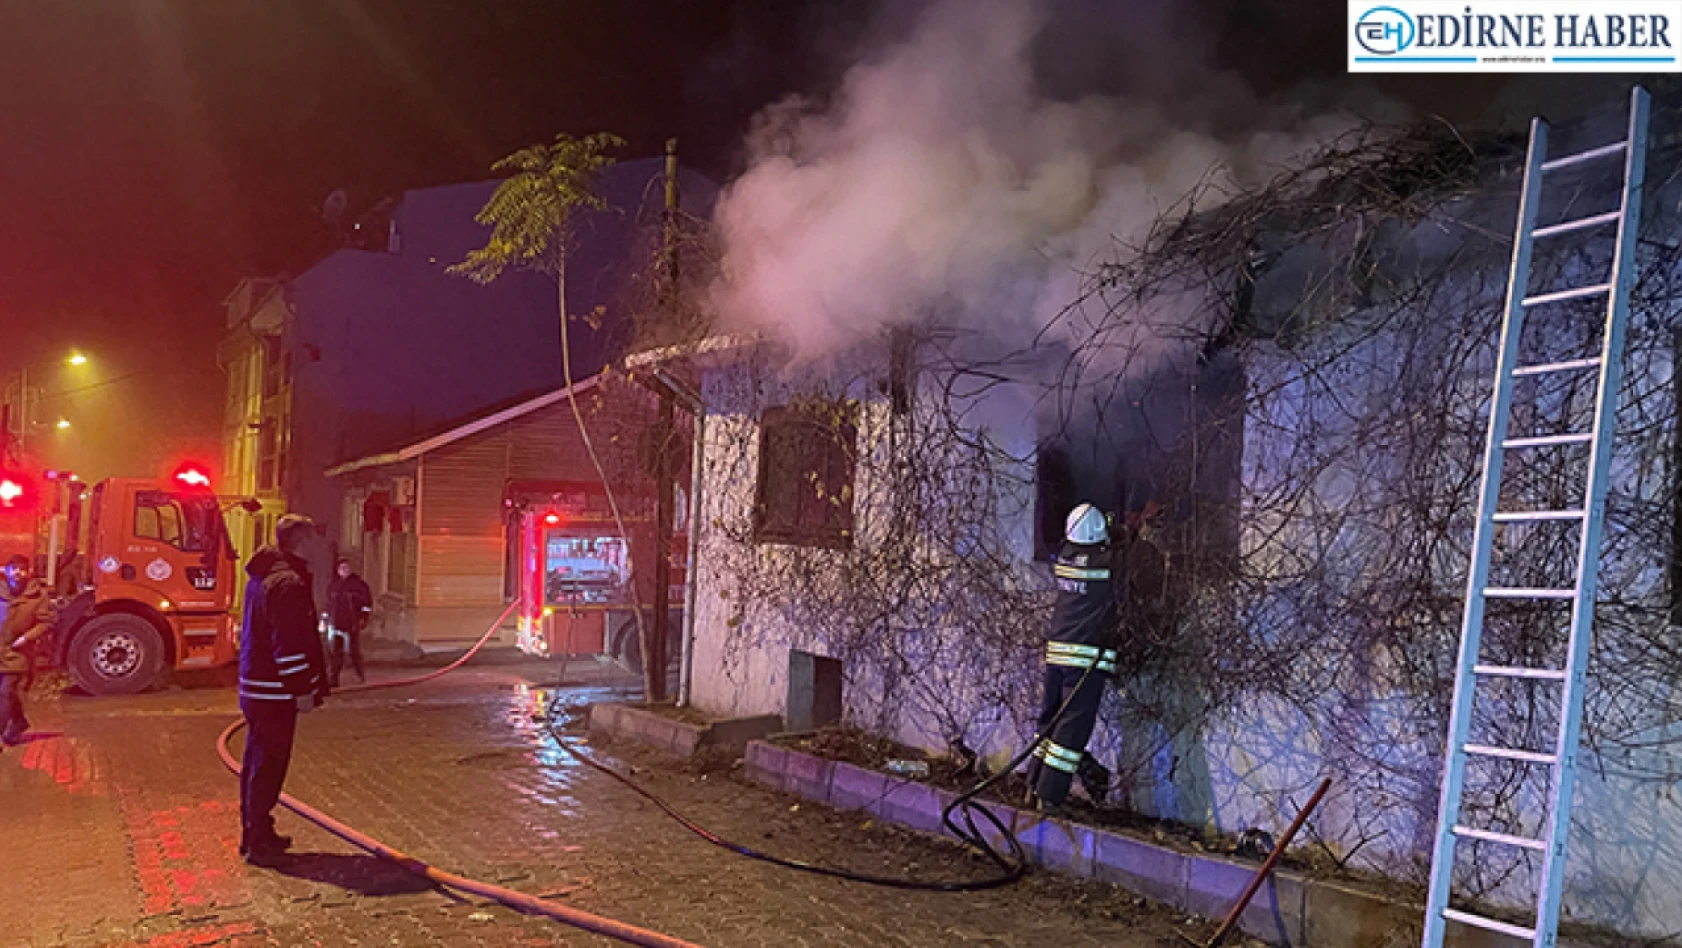 Edirne'de kullanılmayan evde çıkan yangın hasara yol açtı